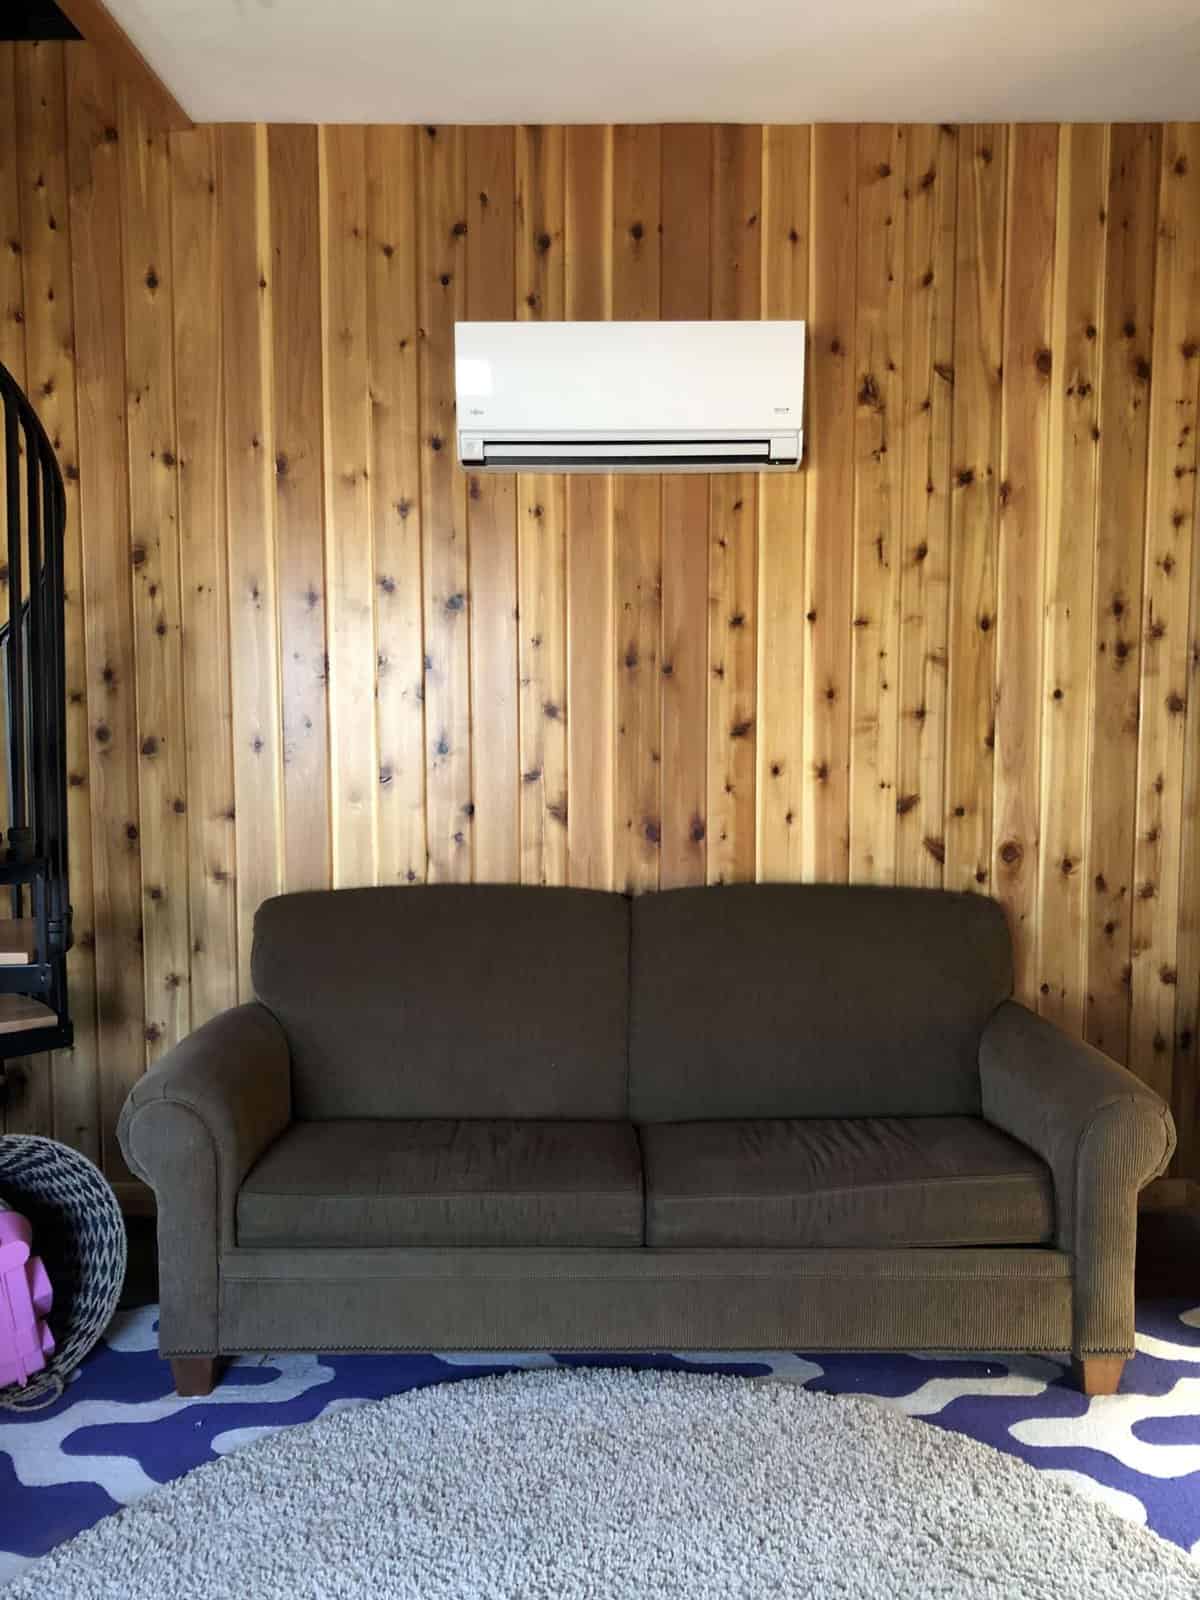 Mini split wall heater